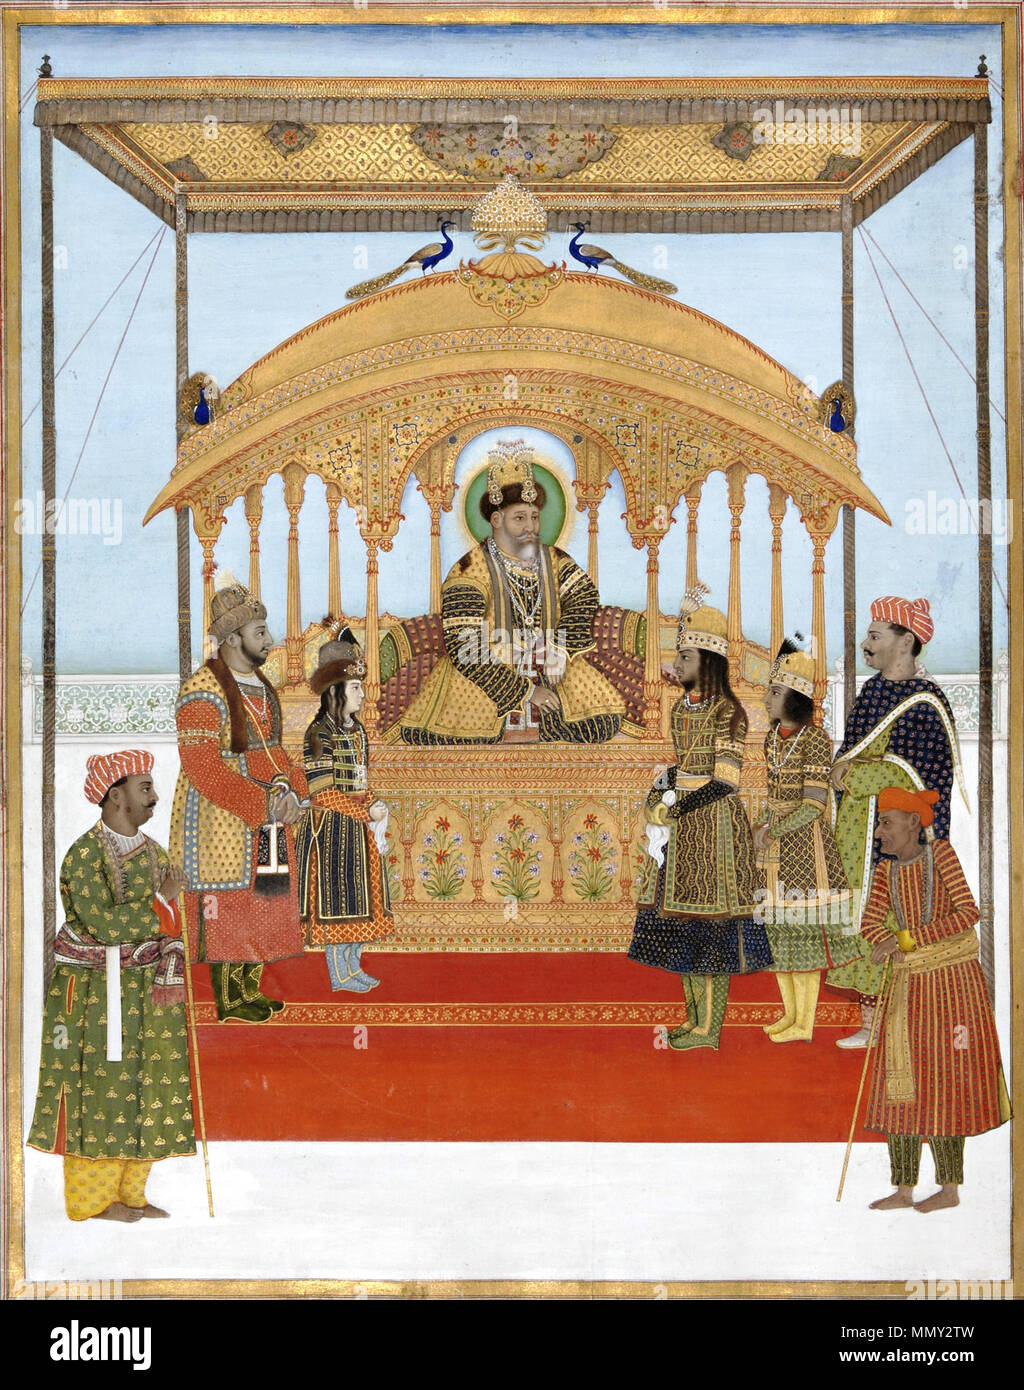 . Anglais : Le Delhi Darbar de Akbar II. Dans cette peinture attribuée à l'artiste Ghulam Murtaza Khan, l'empereur moghol Akbar II (r. 1806-37) est titulaire de ce cour au sommet d'une exquise, jewel-incrustés jharoka, ou trône, couvert par un baldaquin et surmonté d'un baldaquin brodé ; l'jharoka est une copie de la célèbre Trône du paon pillées par les Iraniens sous la dynastie afsharide ruler Nadir Shah (r. 1736-47 CE) en 1738-39 CE. Les fils d'Akbar, Abu Zafar Siraj al-Din (l'avenir Bahadur Shah II et le dernier souverain de la dynastie moghole, r. 1838-57 CE), Salim Mirza Mirza, Jahangir et Mirza Babur, stand dans Banque D'Images